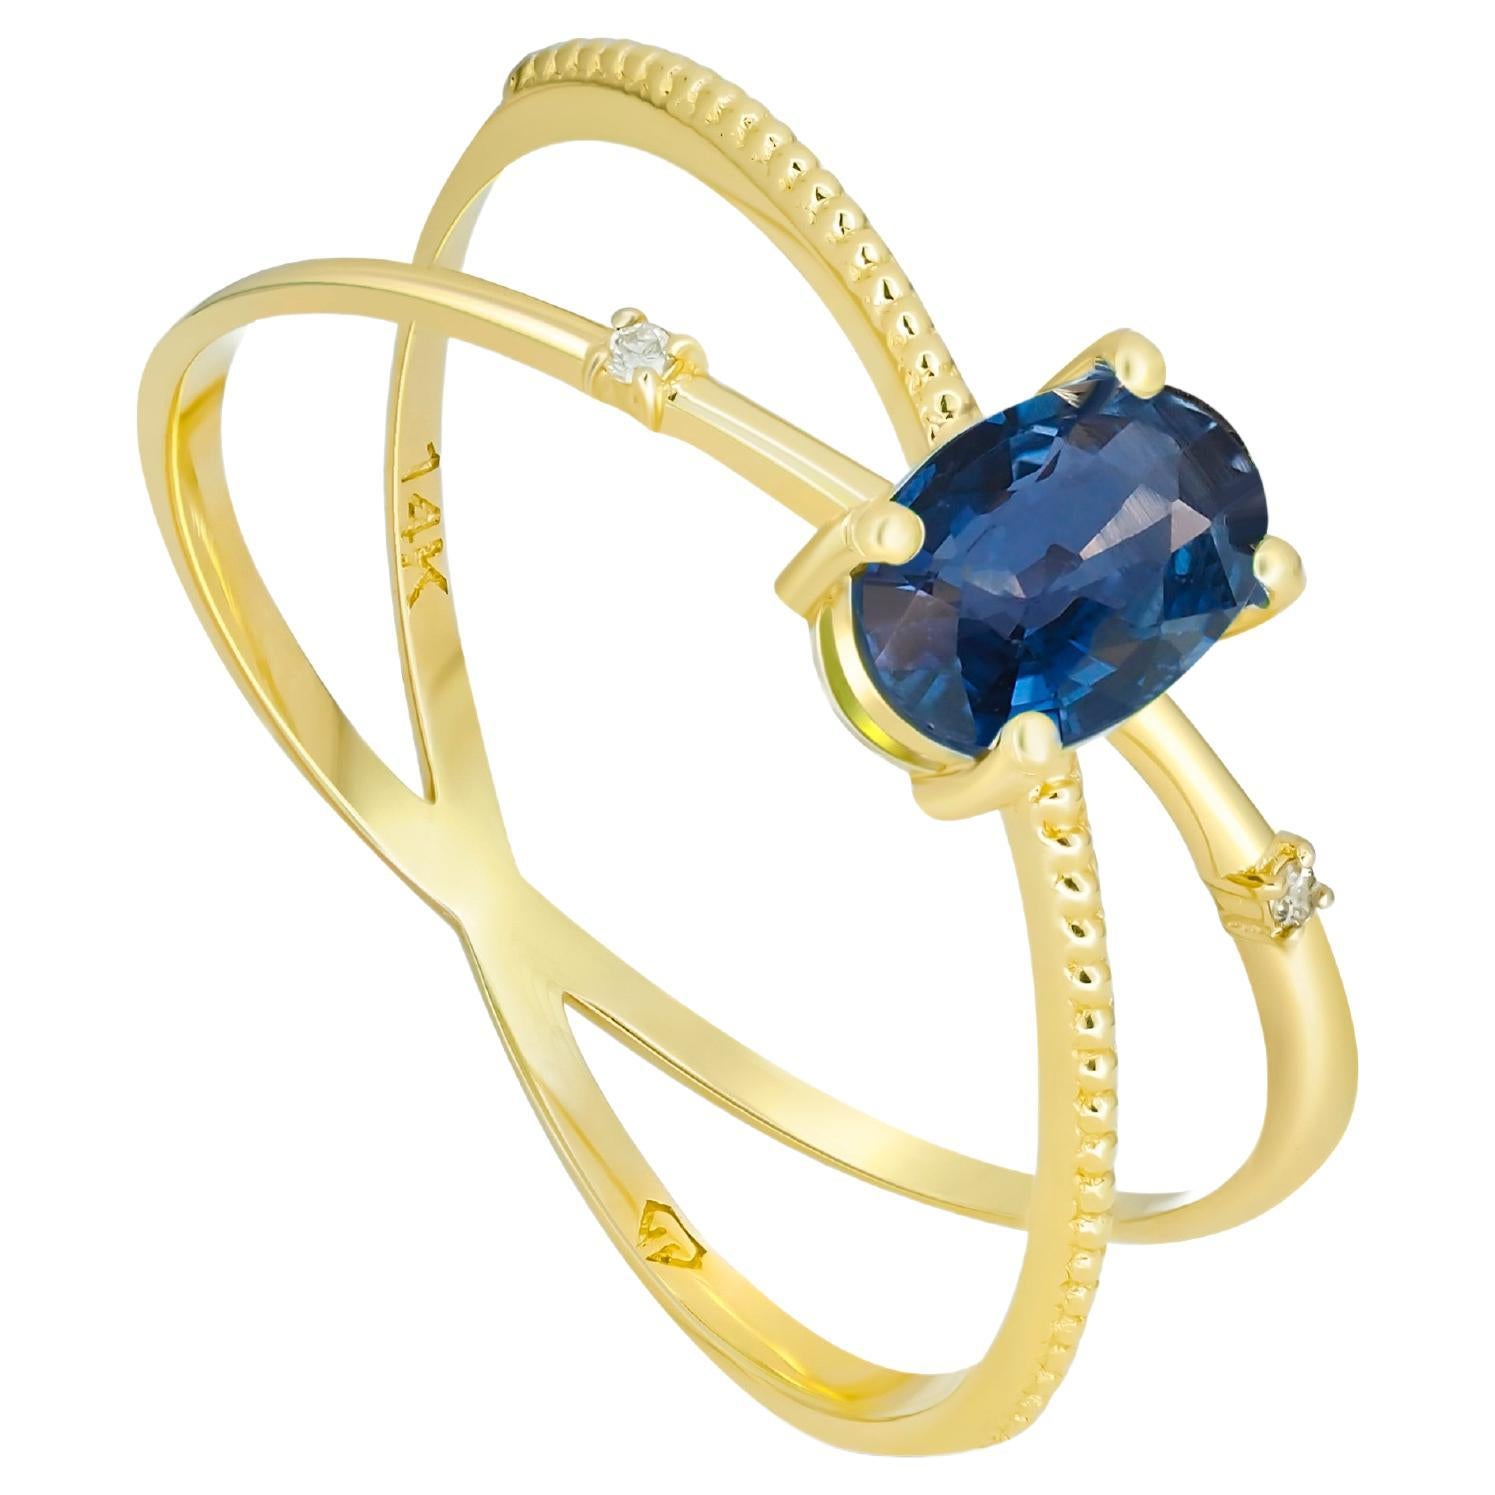  Goldring mit Saphiren und Diamanten. Blauer Saphir-Ring.!